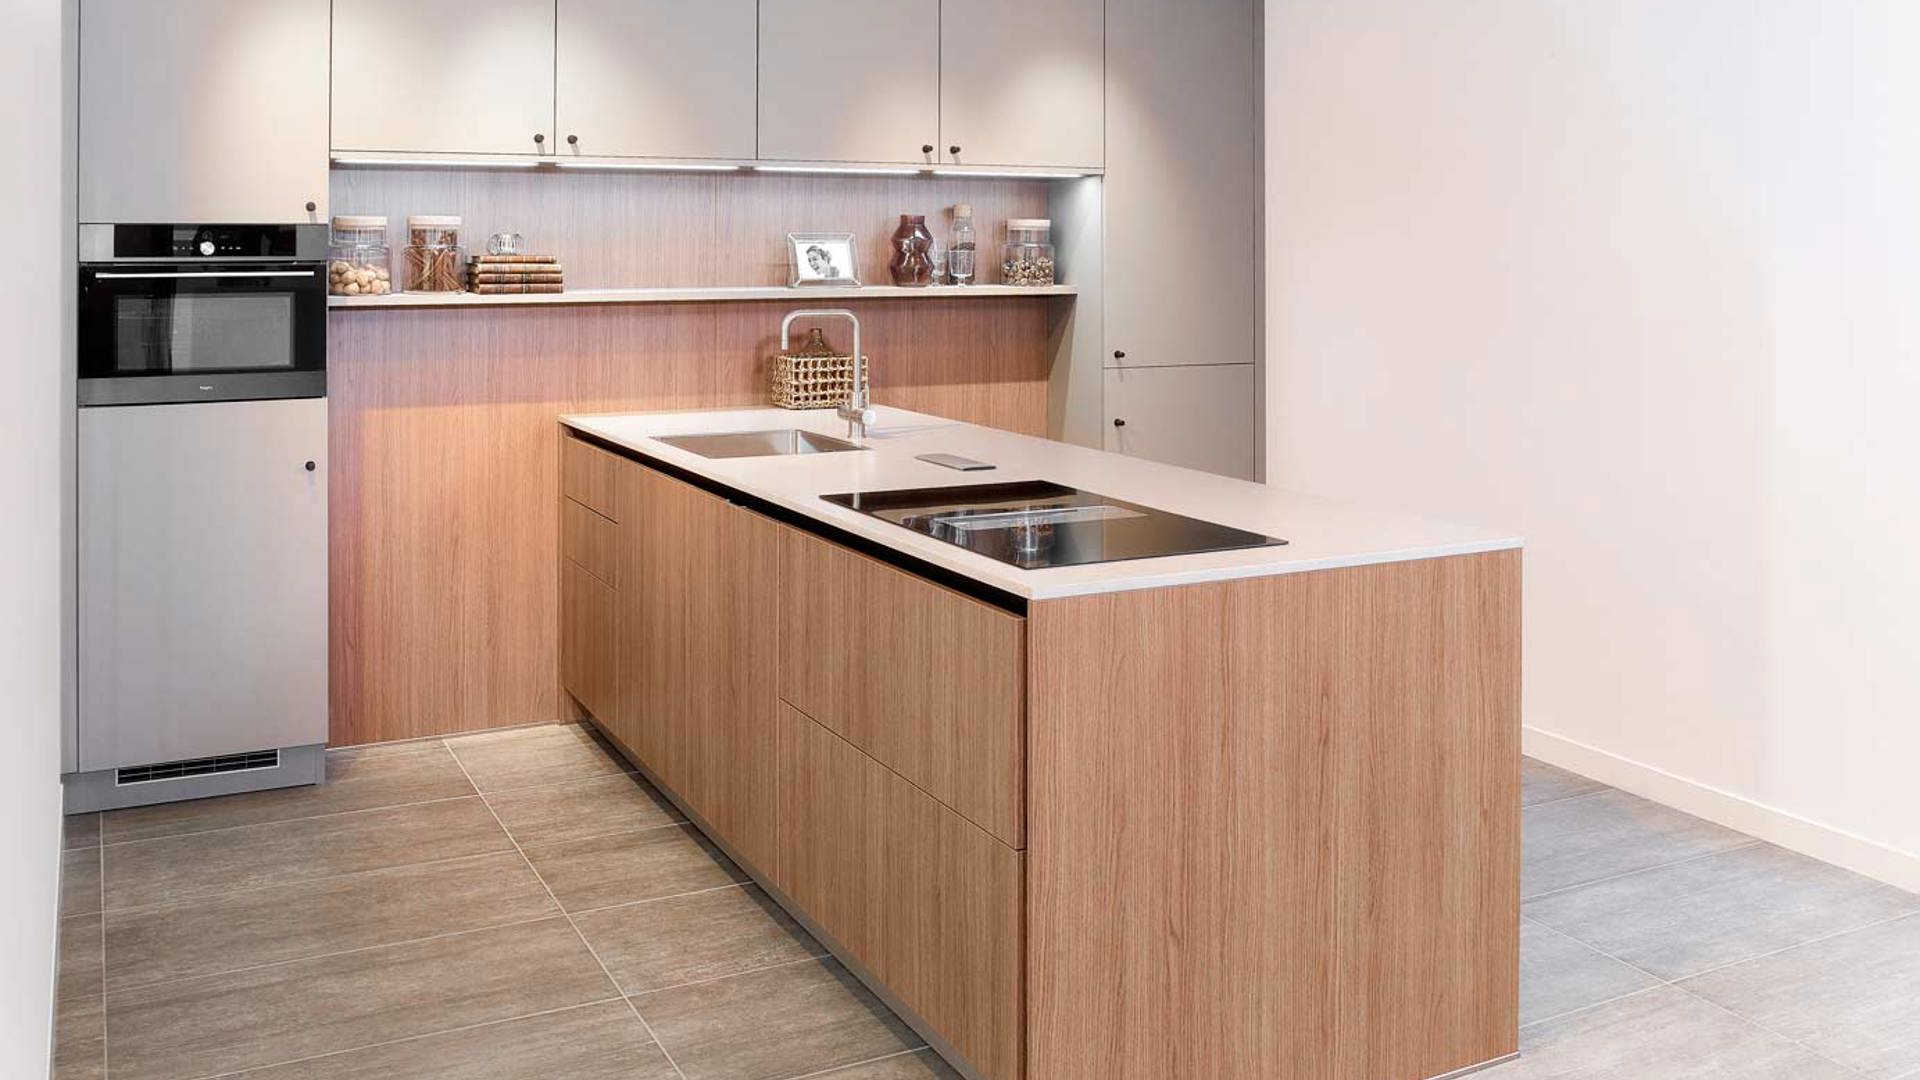 Deze strakke moderne keuken beschikt over veel lades voor opbergruimte